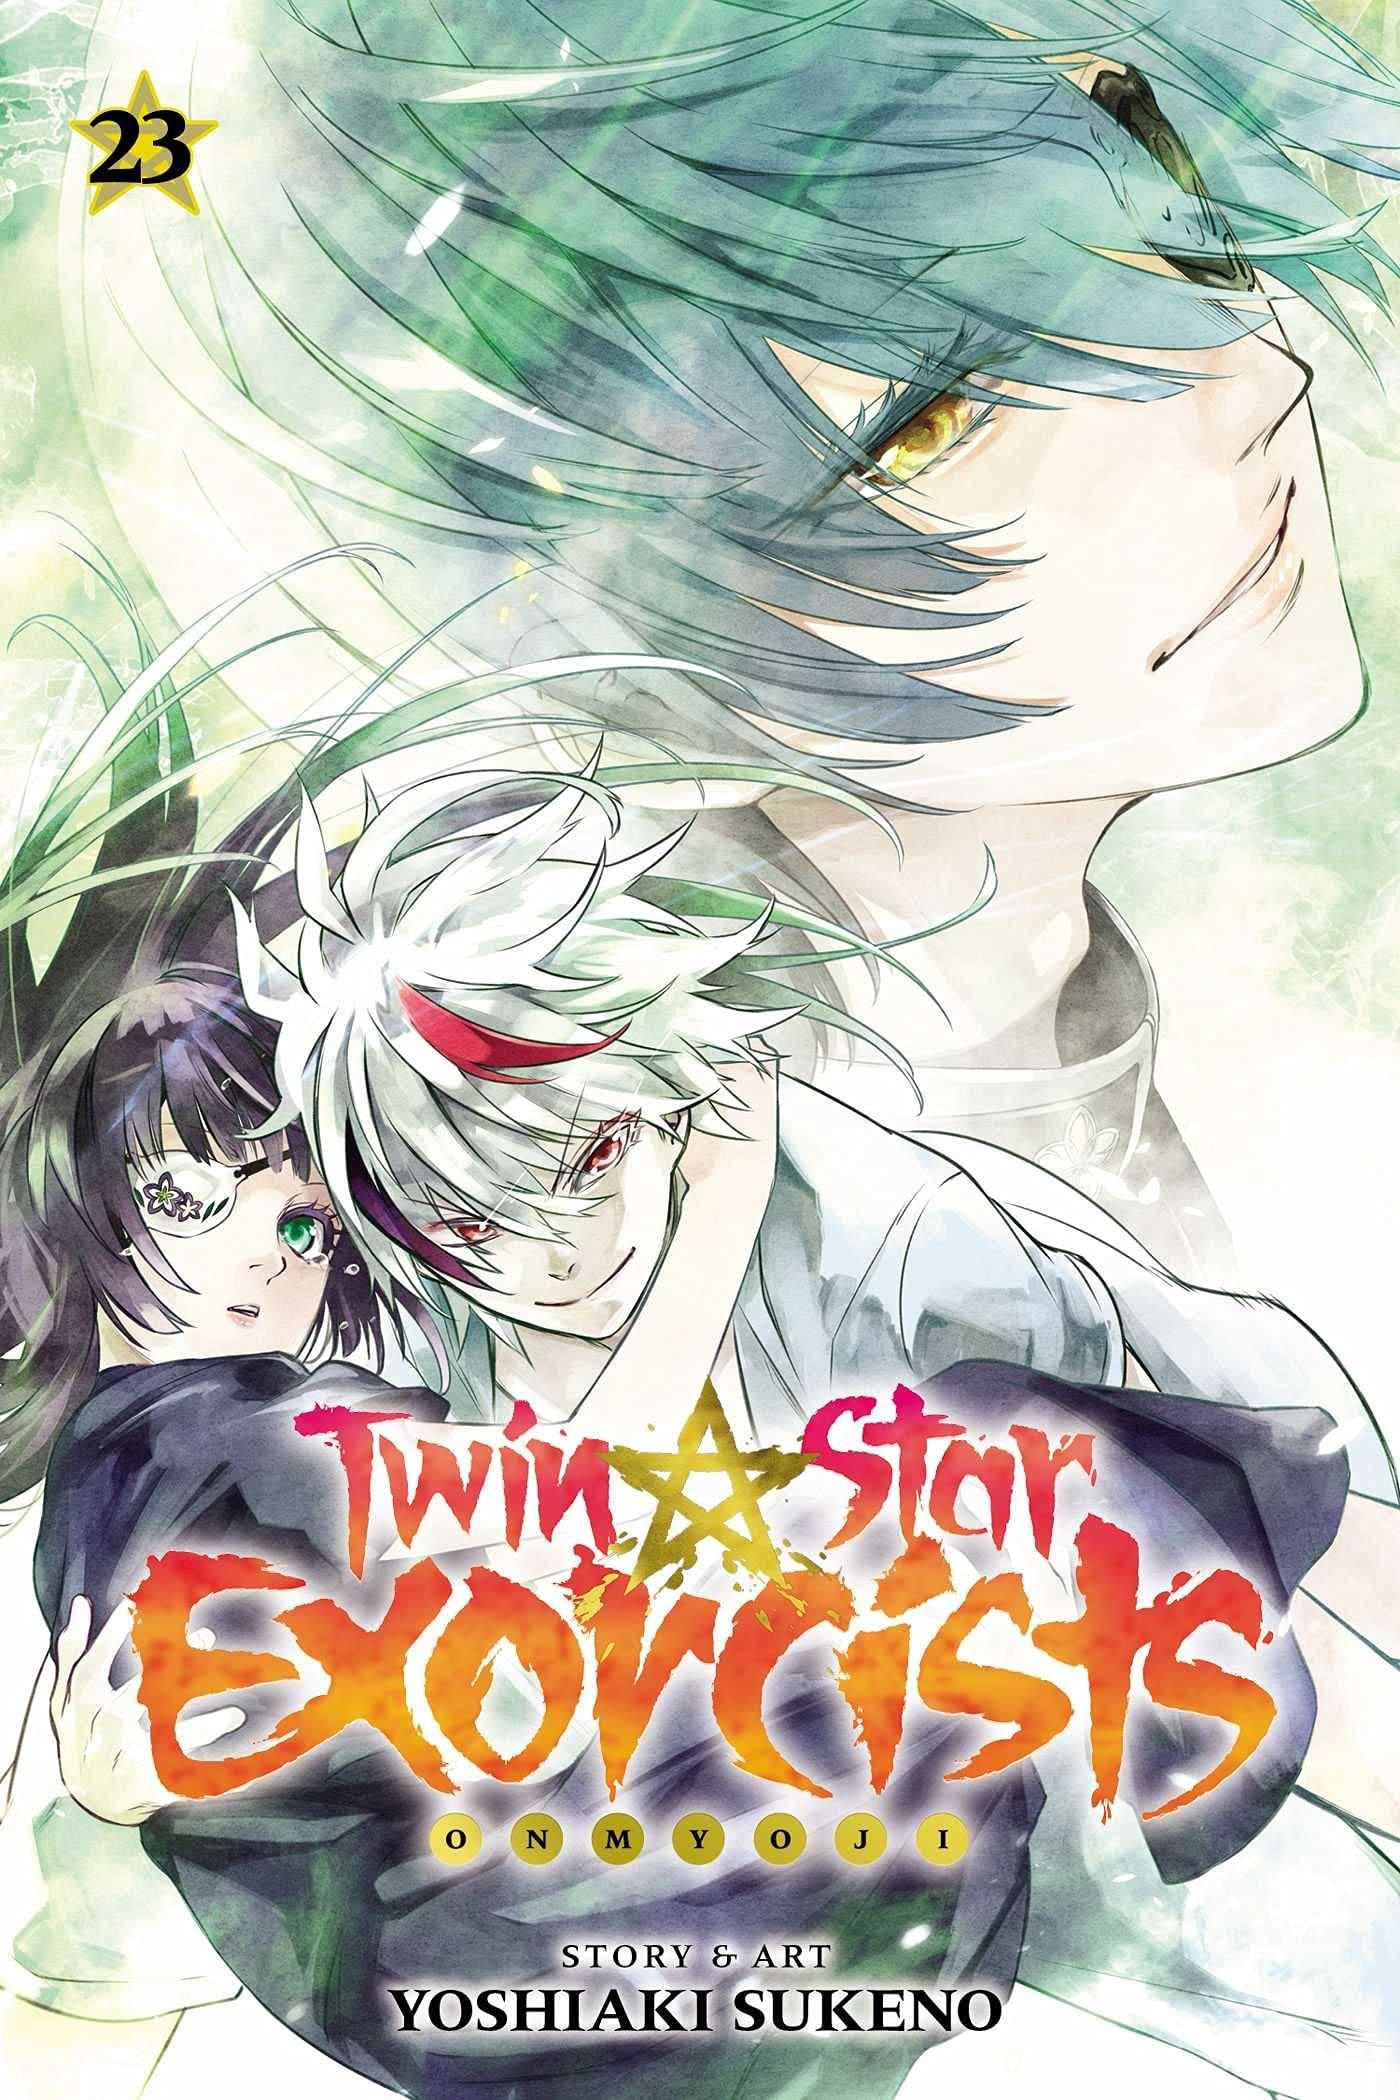 Twin Star Exorcists (Manga) Vol. 23 - Tankobonbon